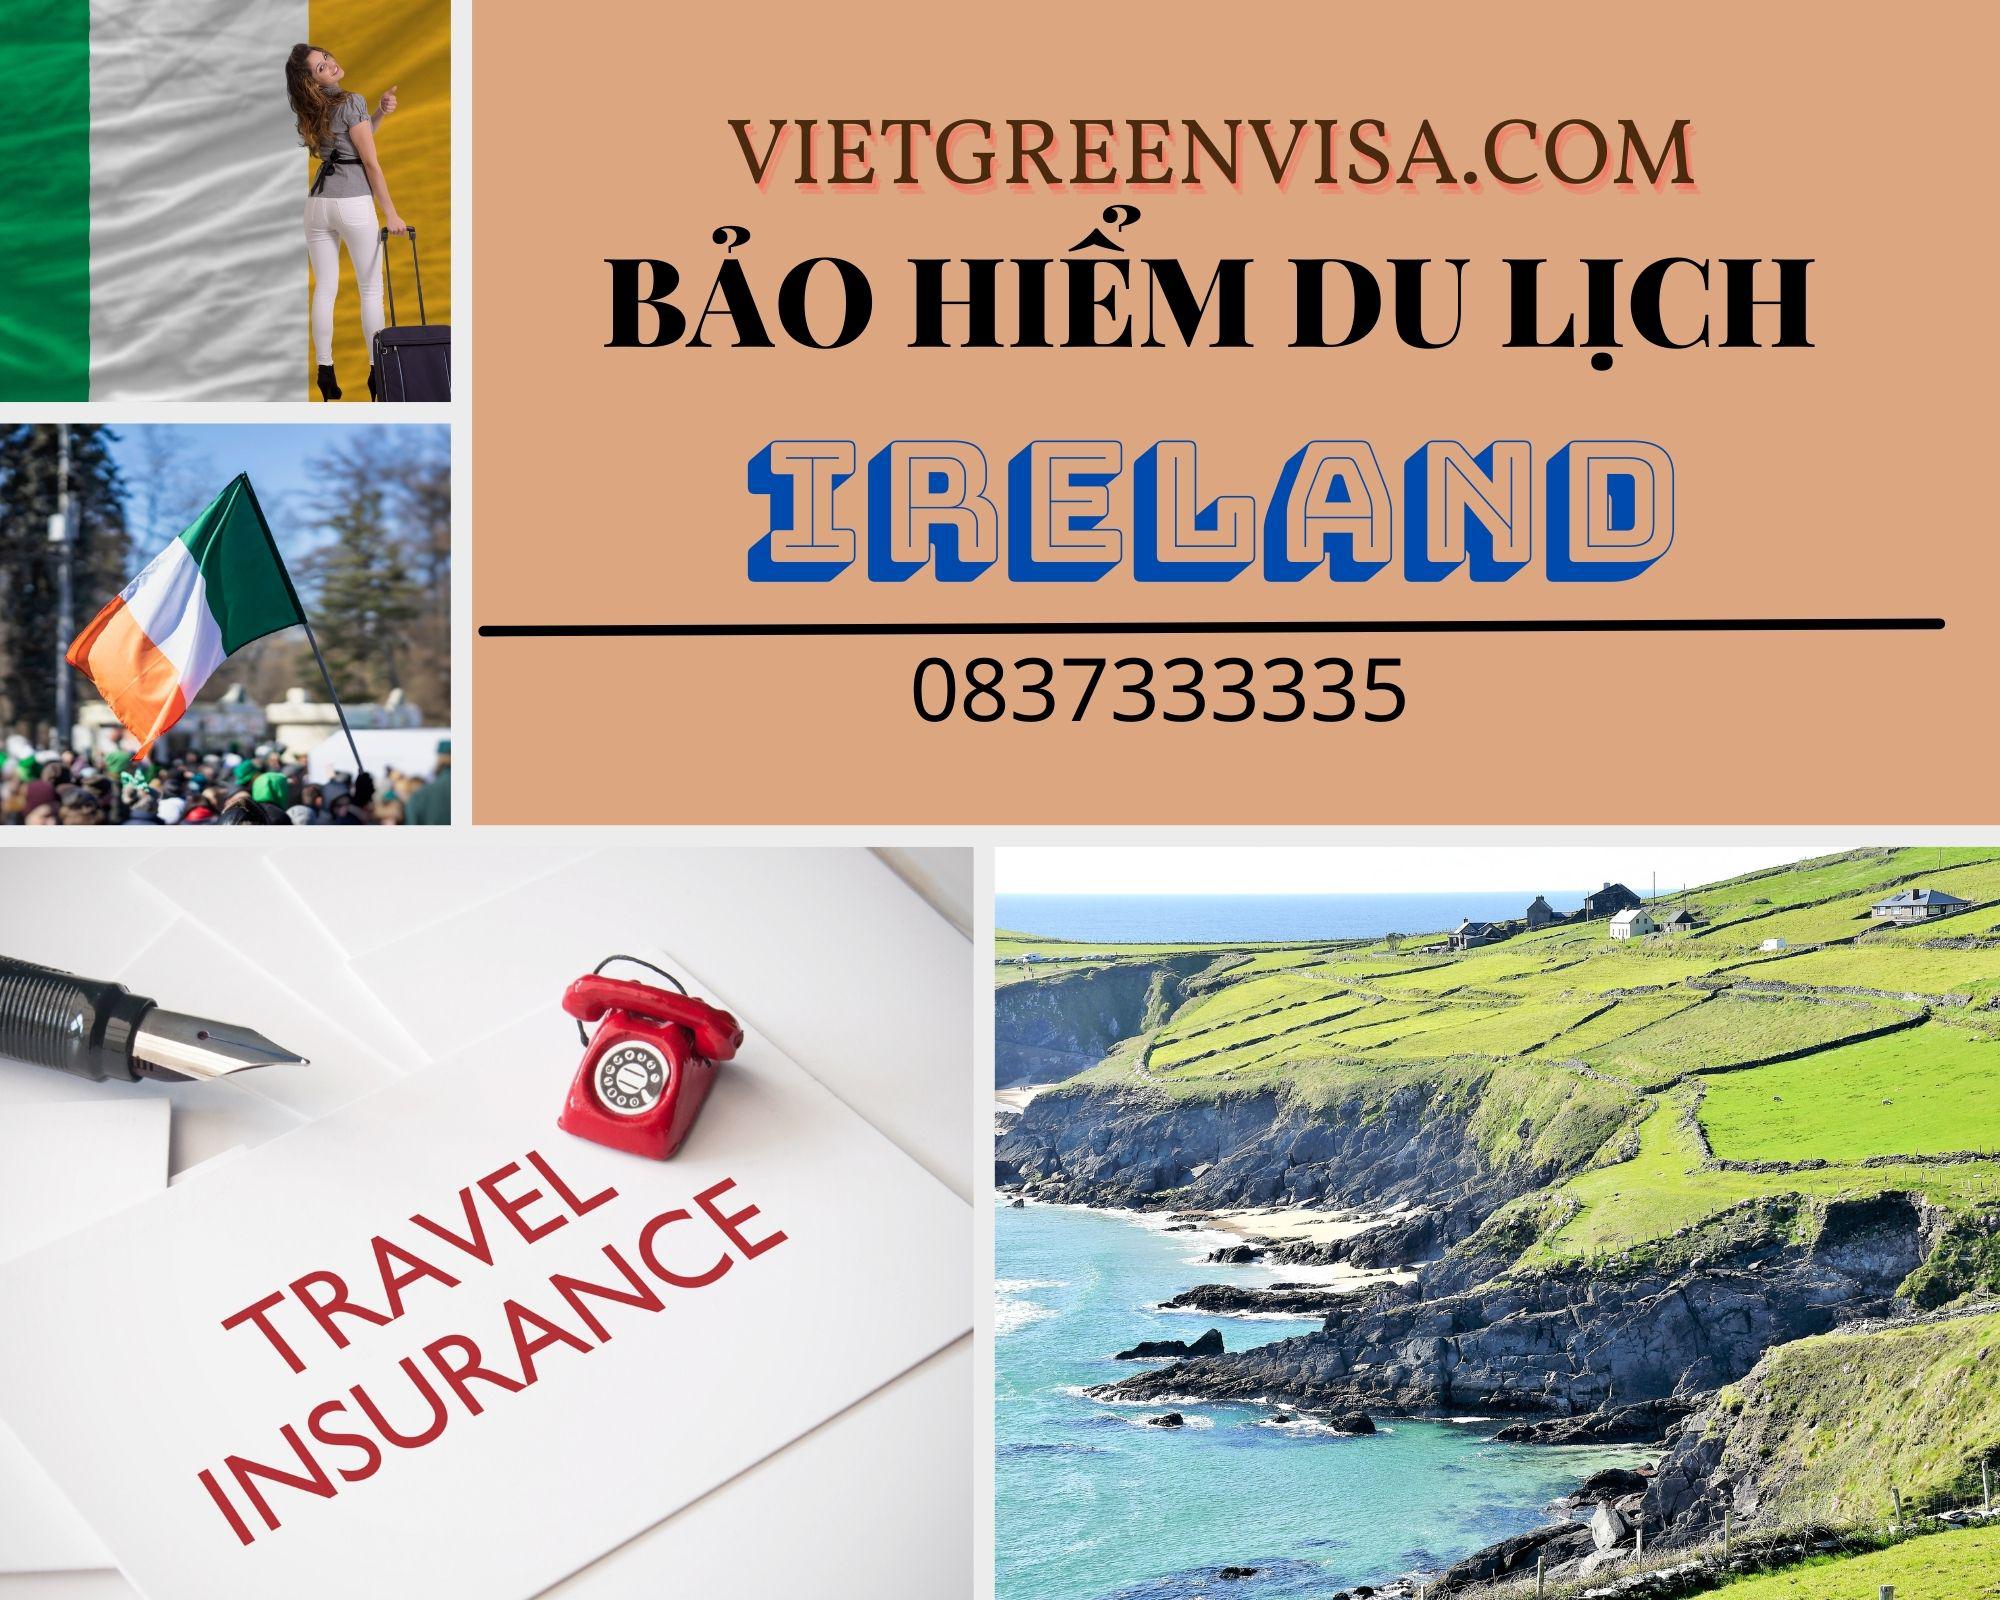 Dịch vụ bảo hiểm du lịch xin visa Ireland giá tốt nhất